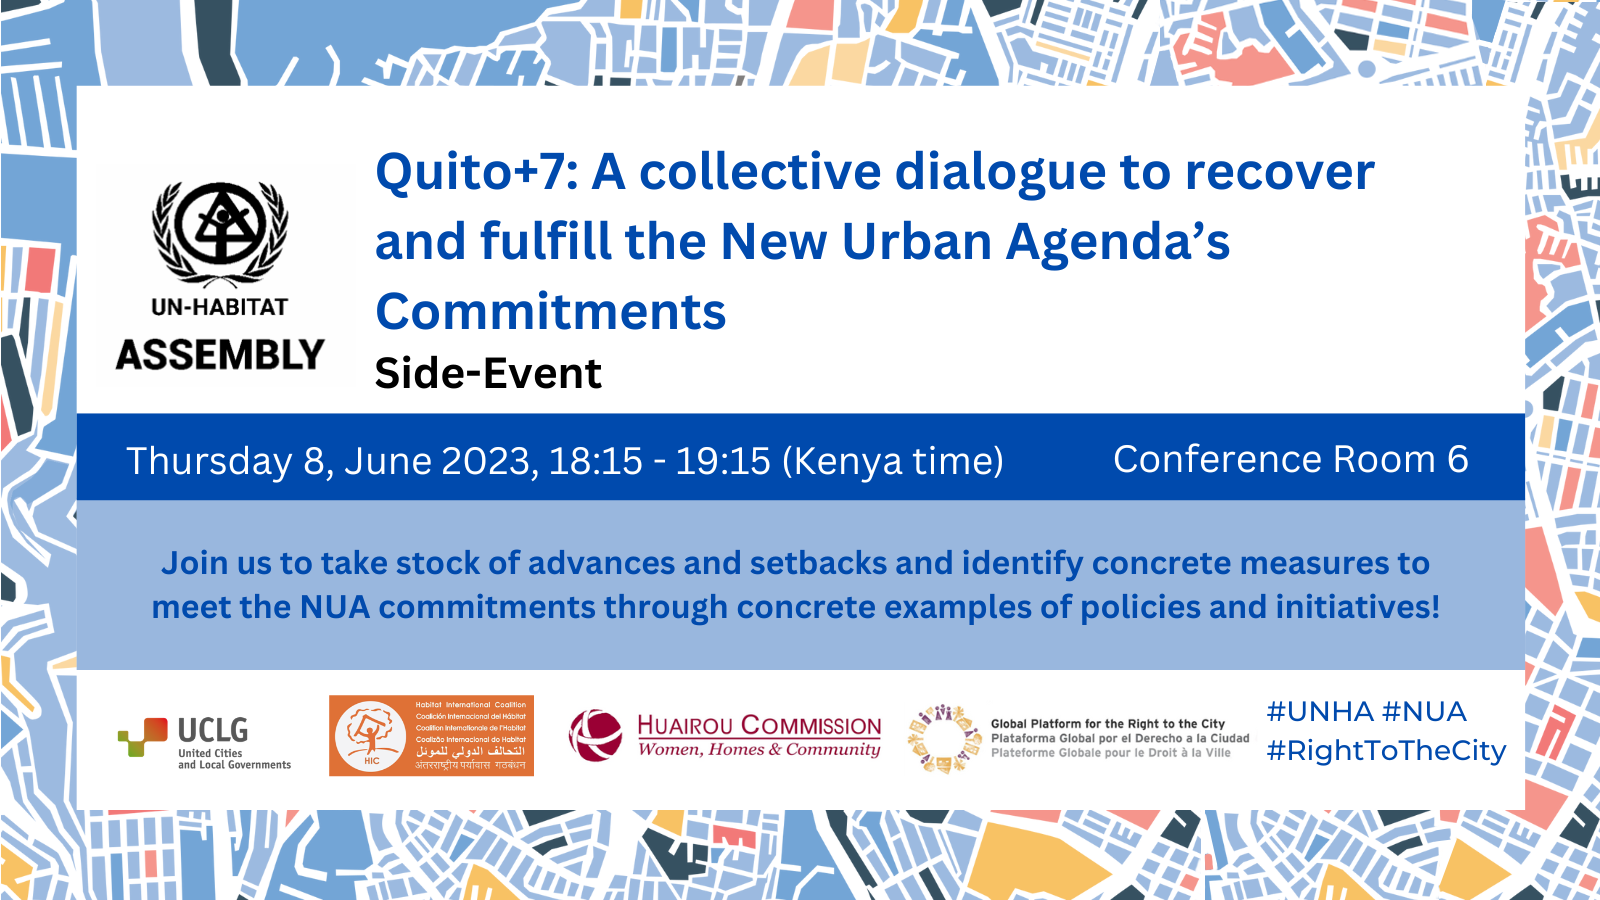 Evento paralelo de la Asamblea de ONU Hábitat – Quito+7: Un diálogo colectivo para recuperar y cumplir los compromisos de la Nueva Agenda Urbana